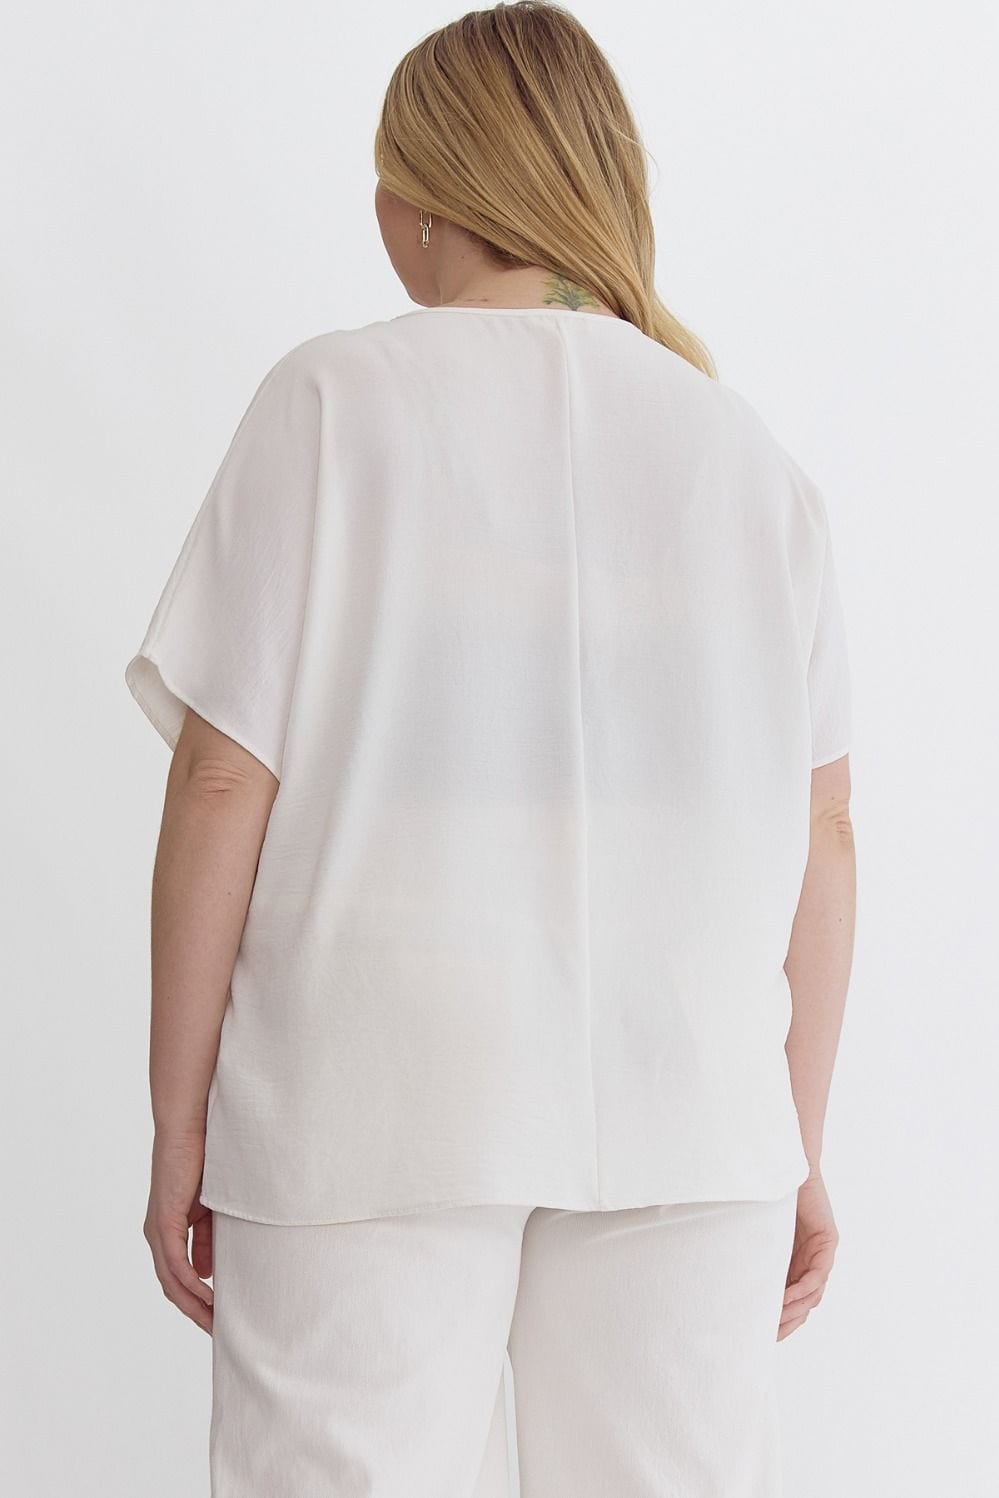 White V-Neck Short Sleeve Top | XL-2X Entro Plus Size